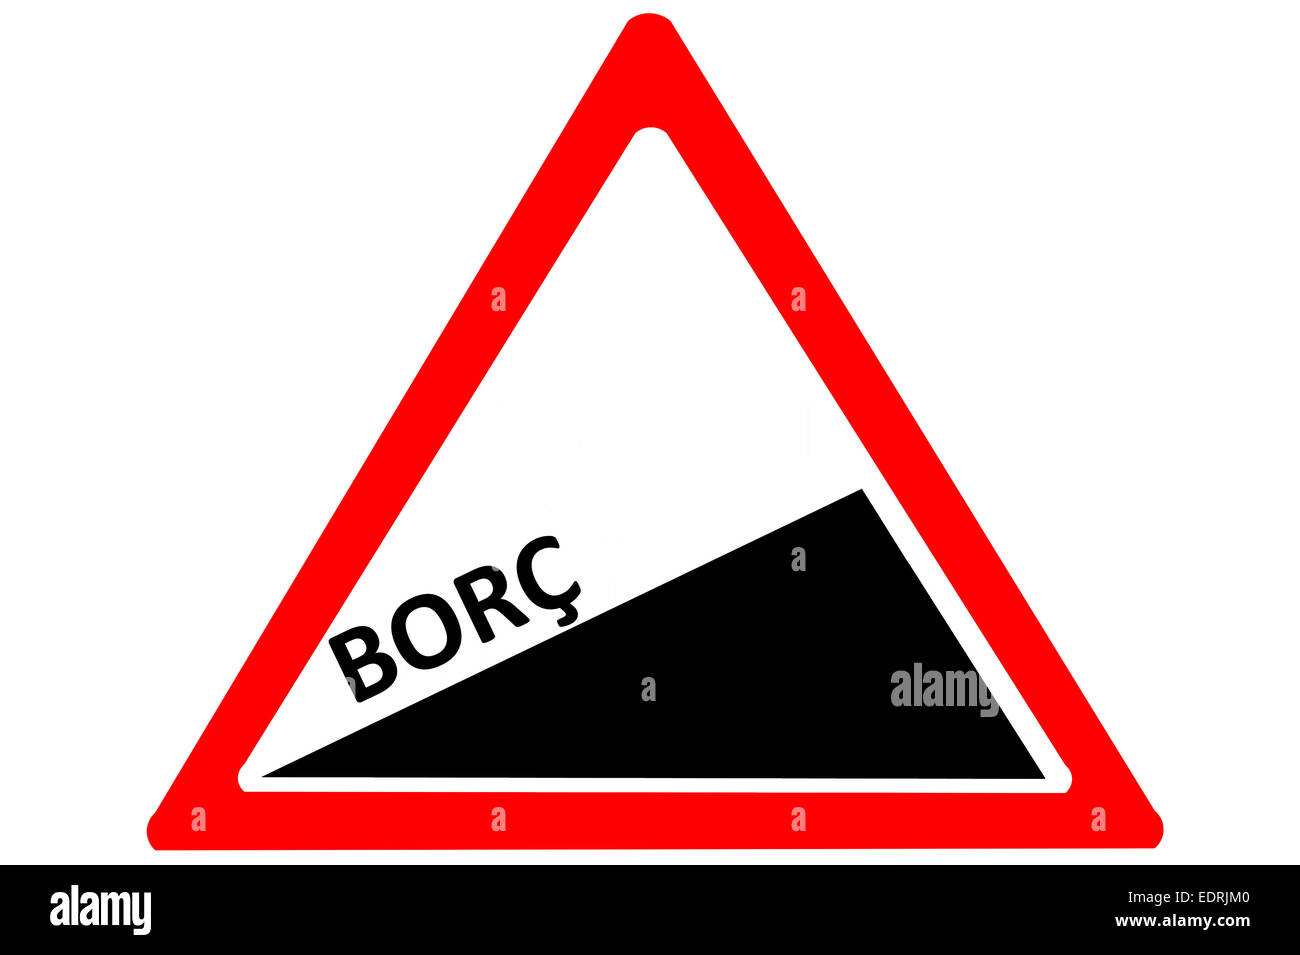 debit Turkish Borc increasing warning road sign isolated on white background Stock Photo